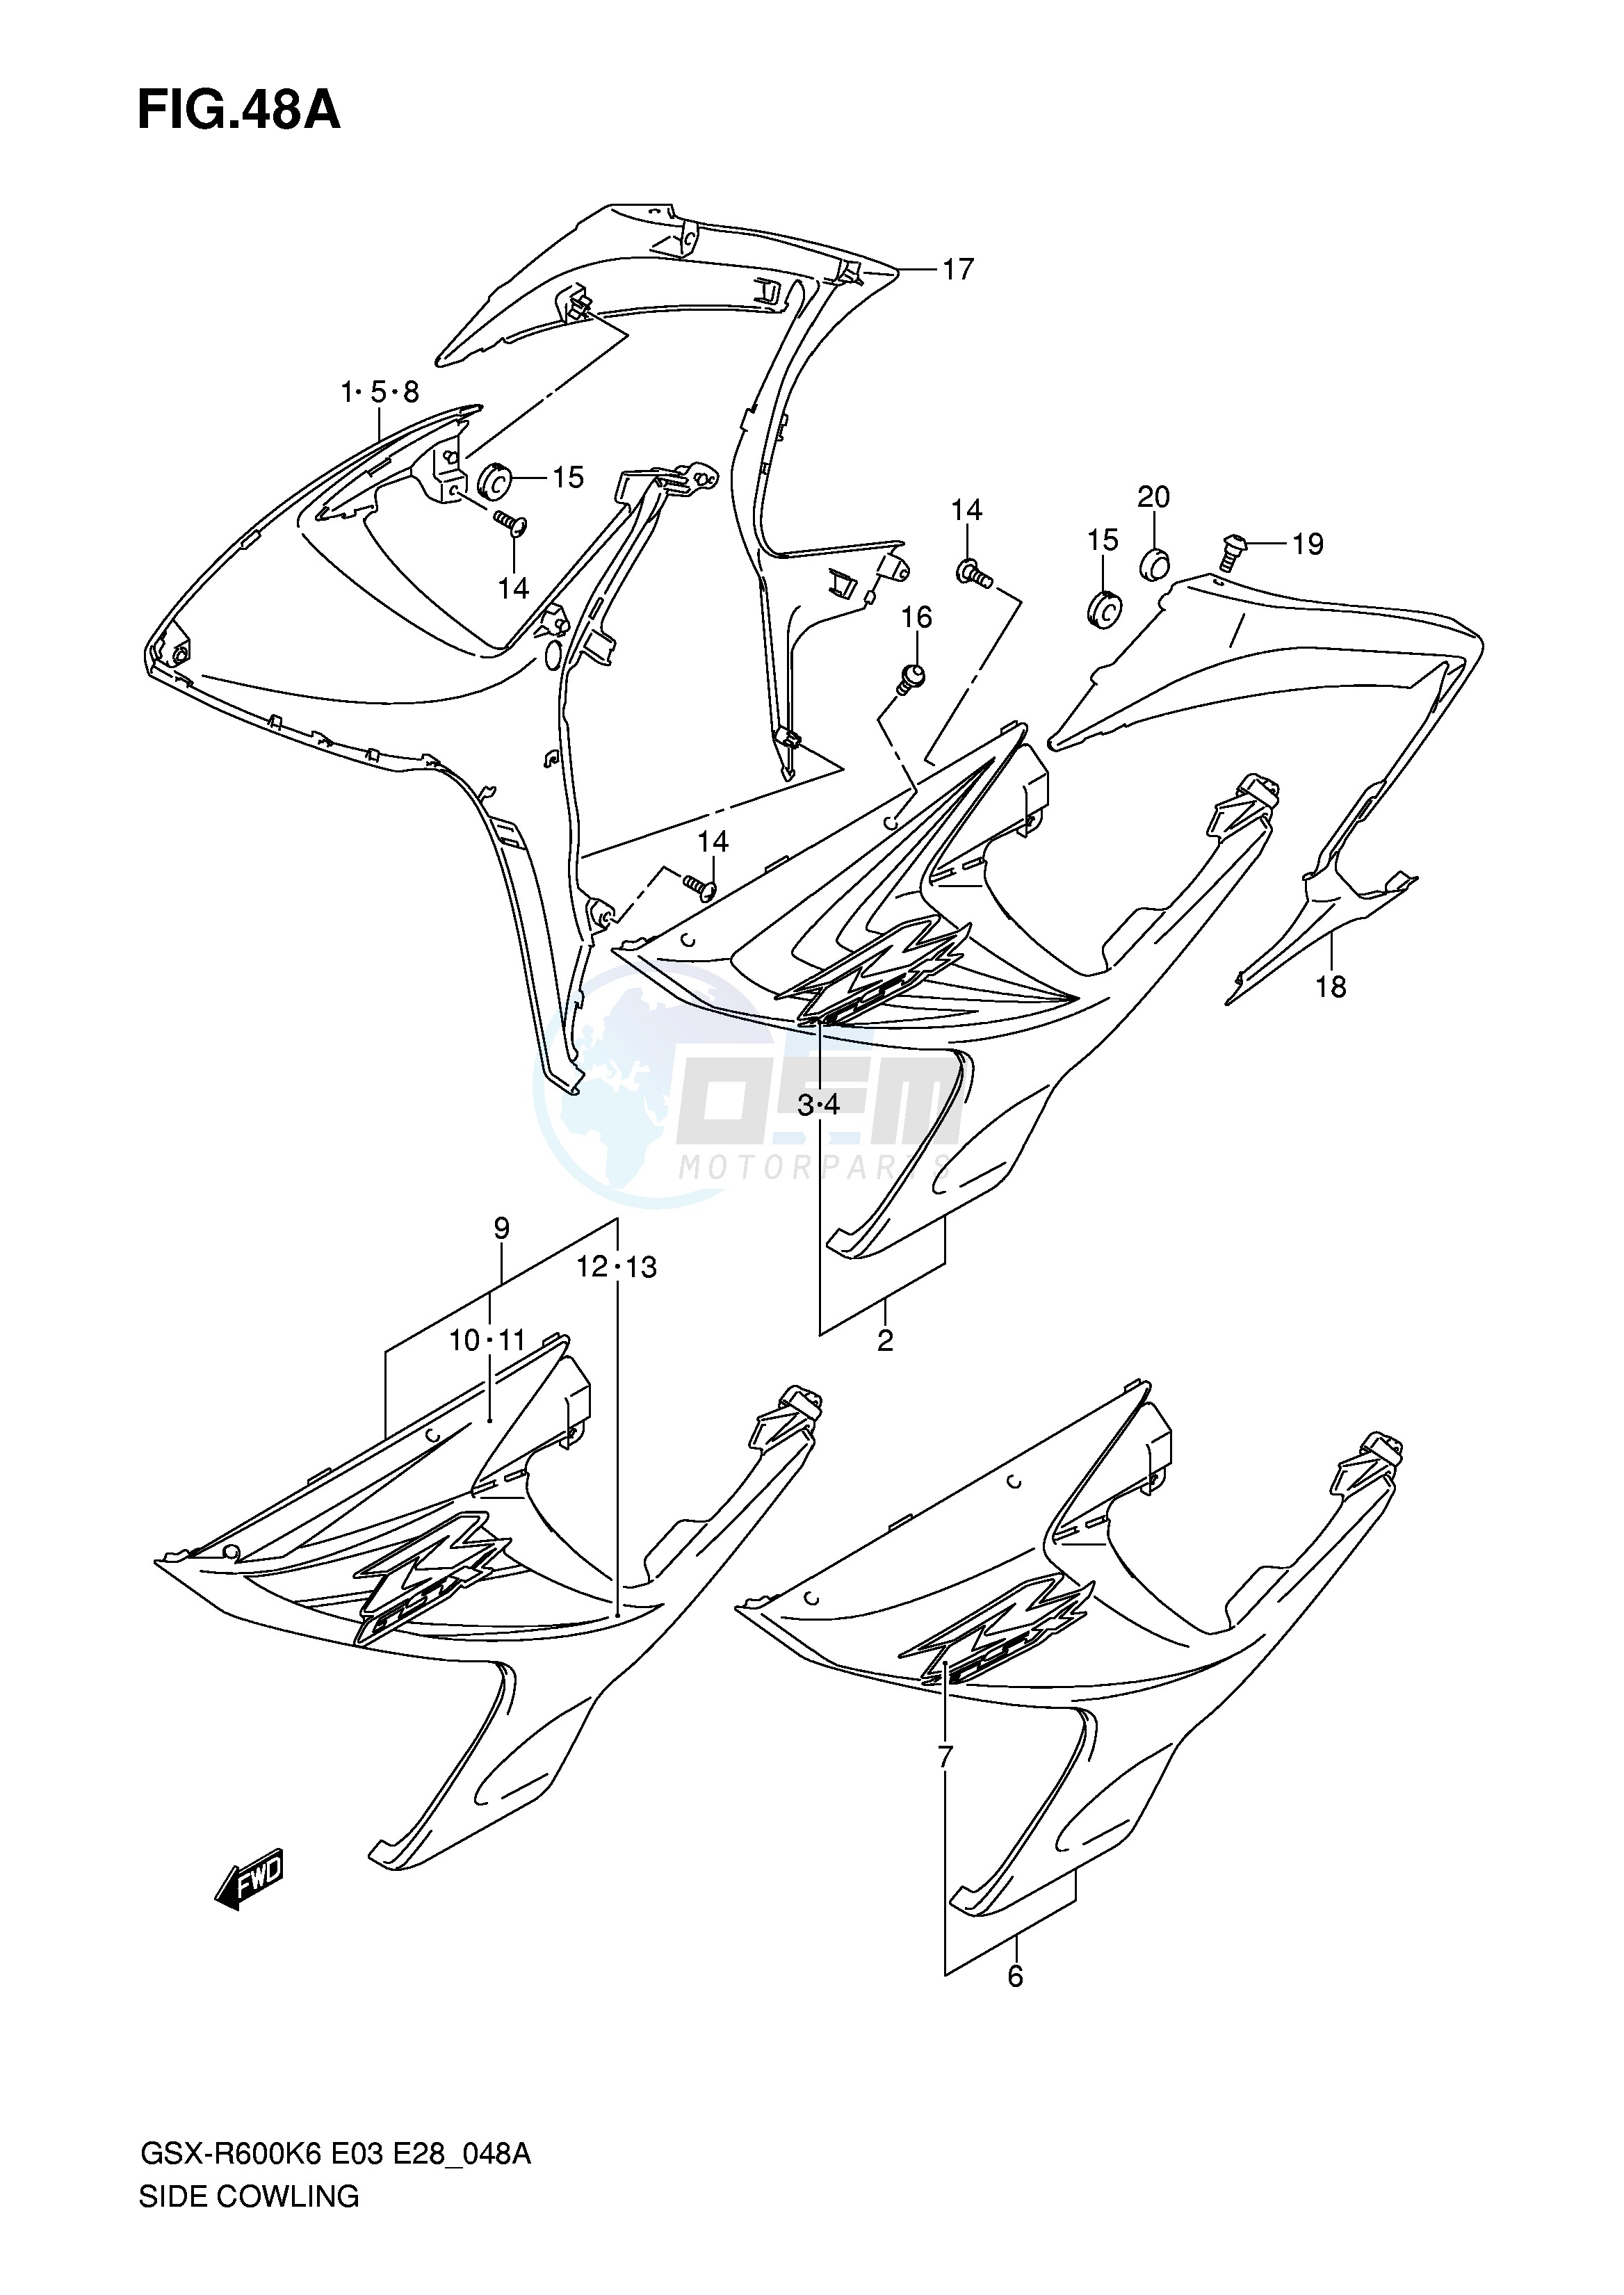 SIDE COWLING (MODEL K7) blueprint